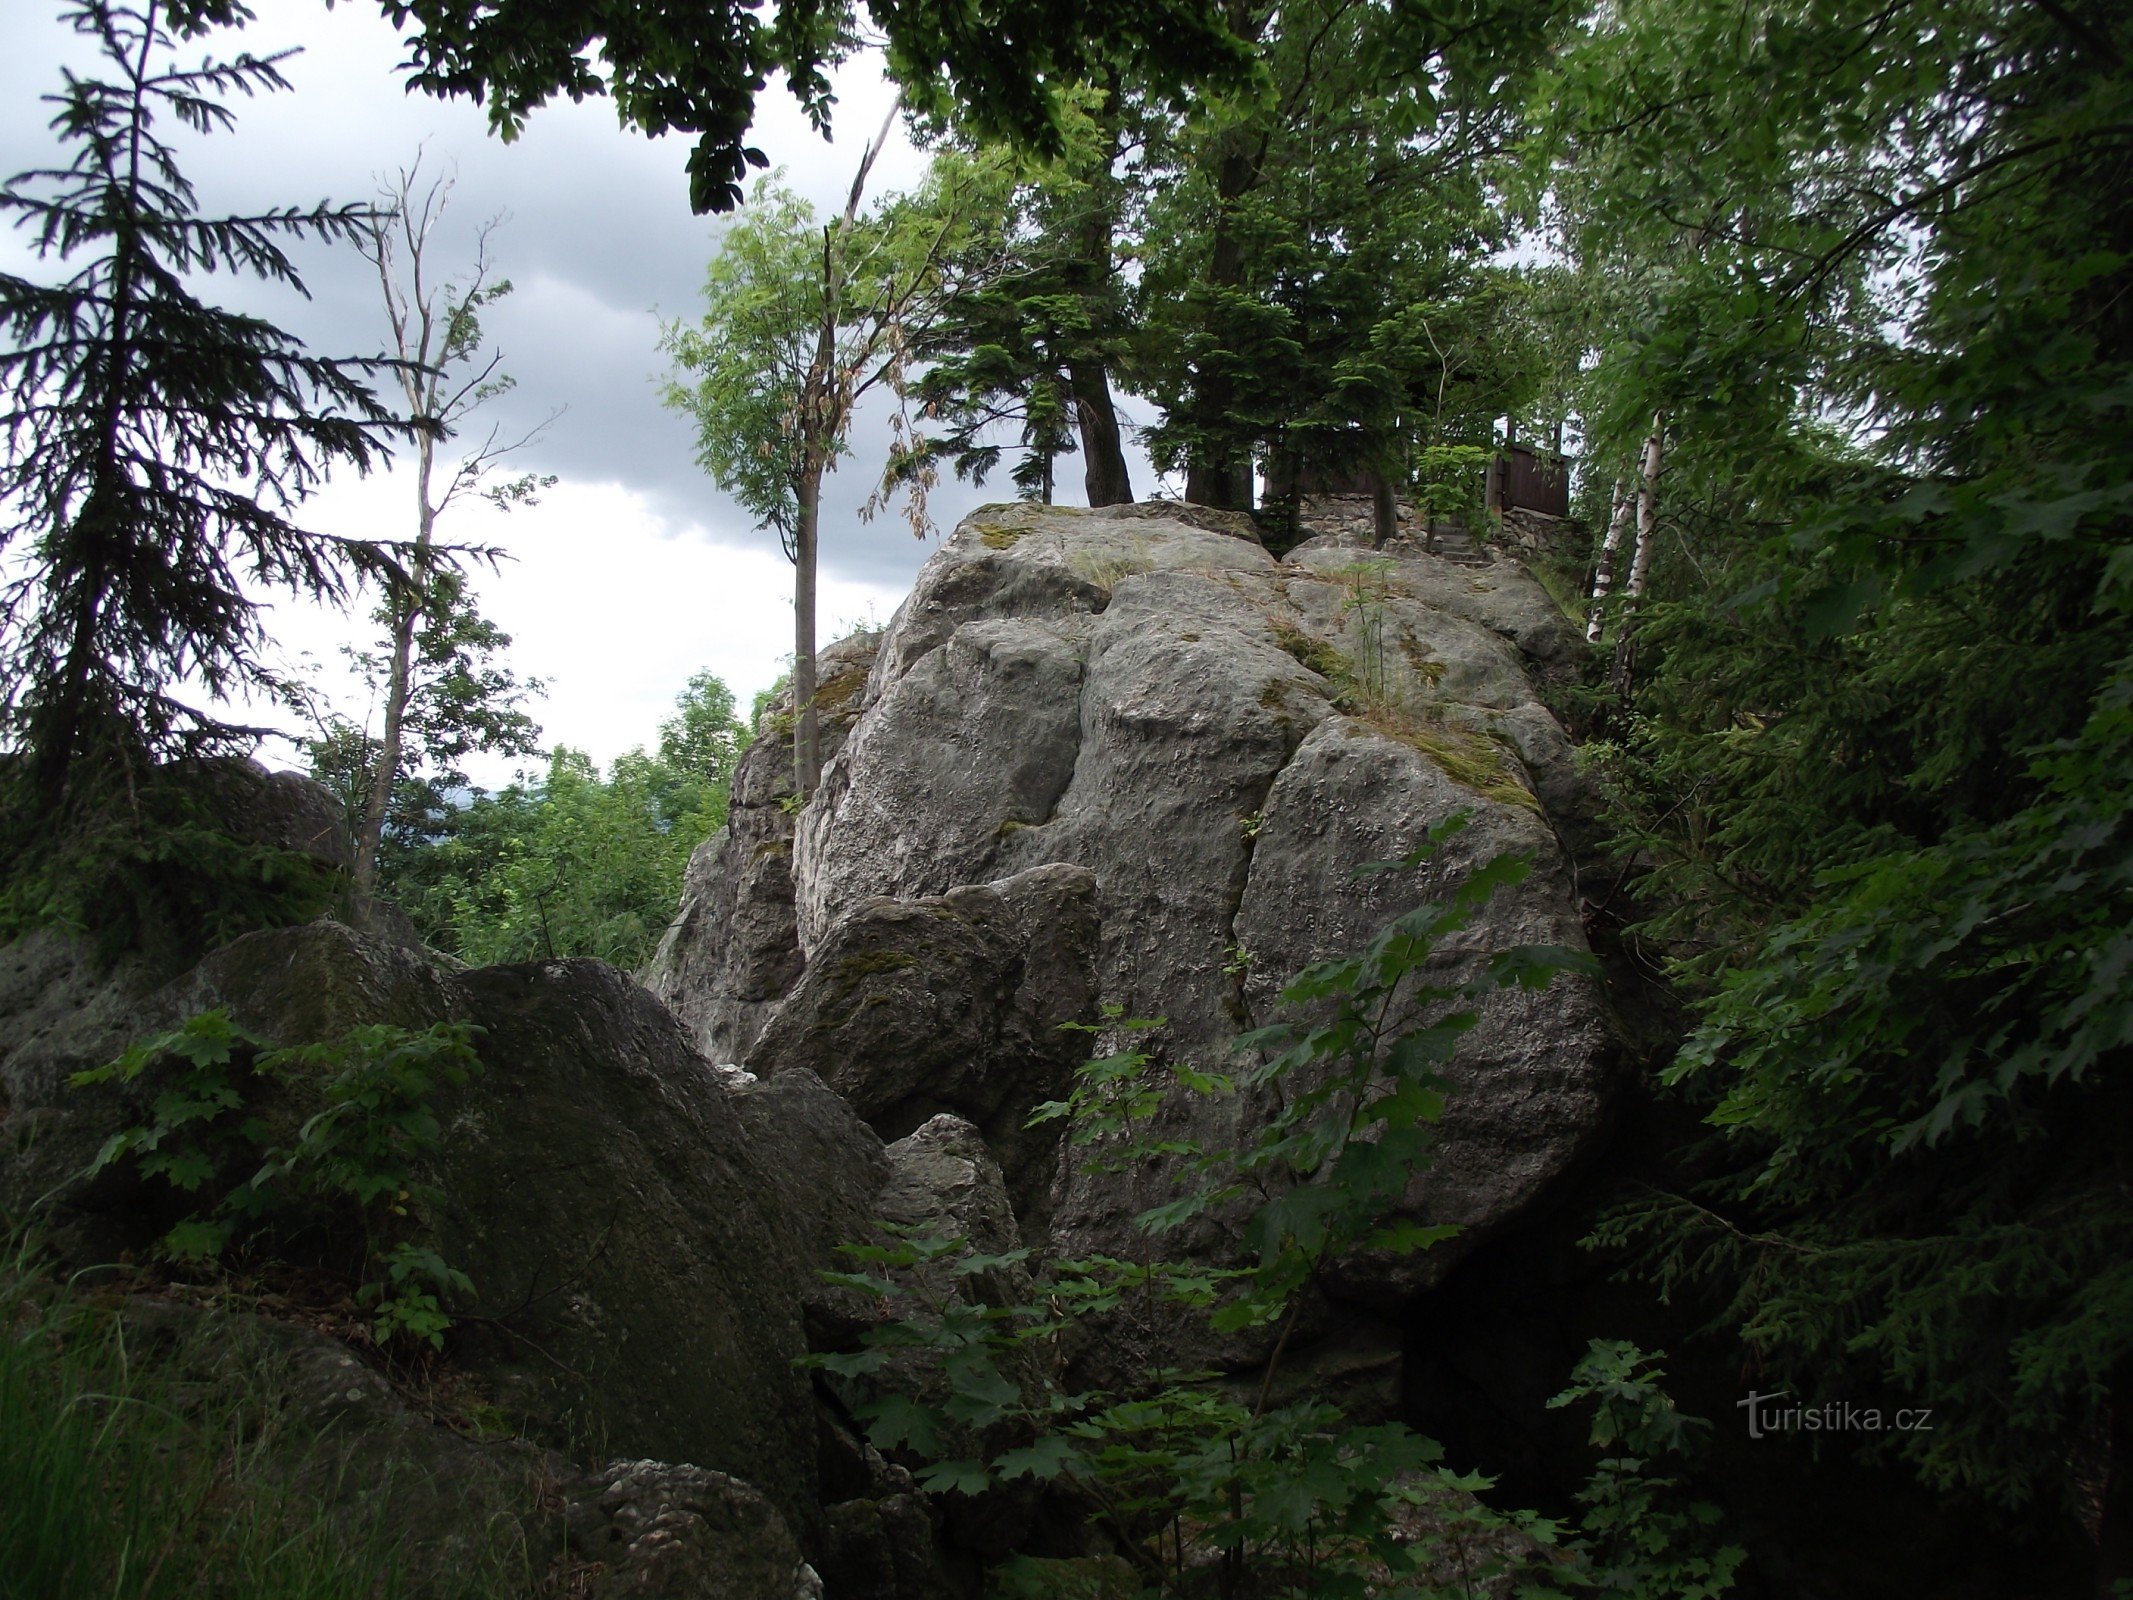 Šumperk / Bratrušov - Rochas da cidade ou três em um (rochas, mirante e pico)